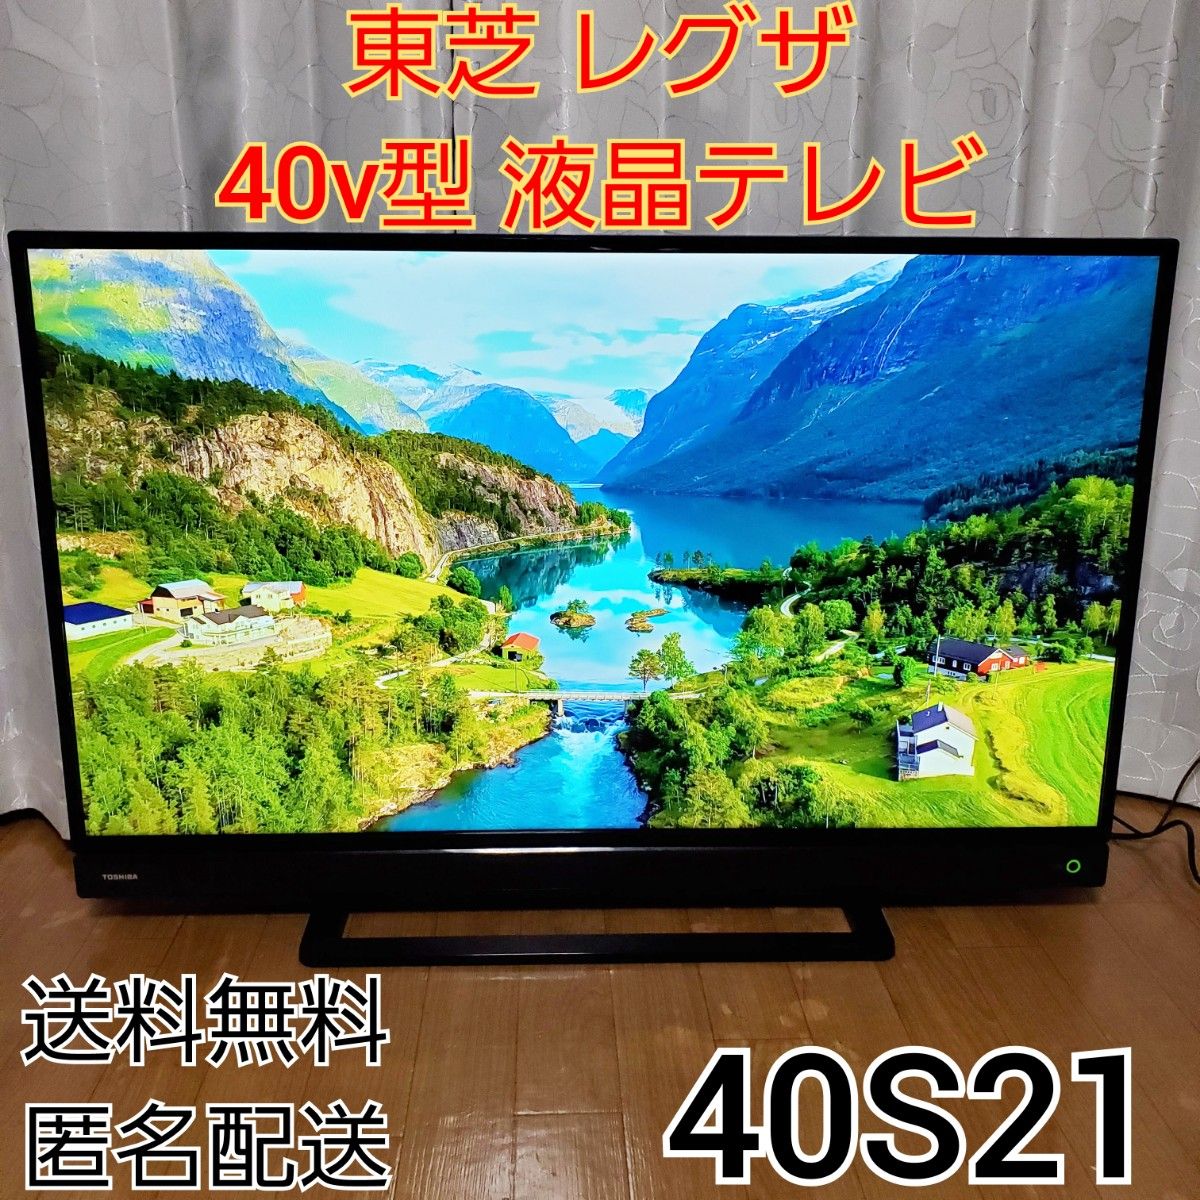 東芝 レグザ フルハイビジョン 液晶テレビ 40V型 40S21